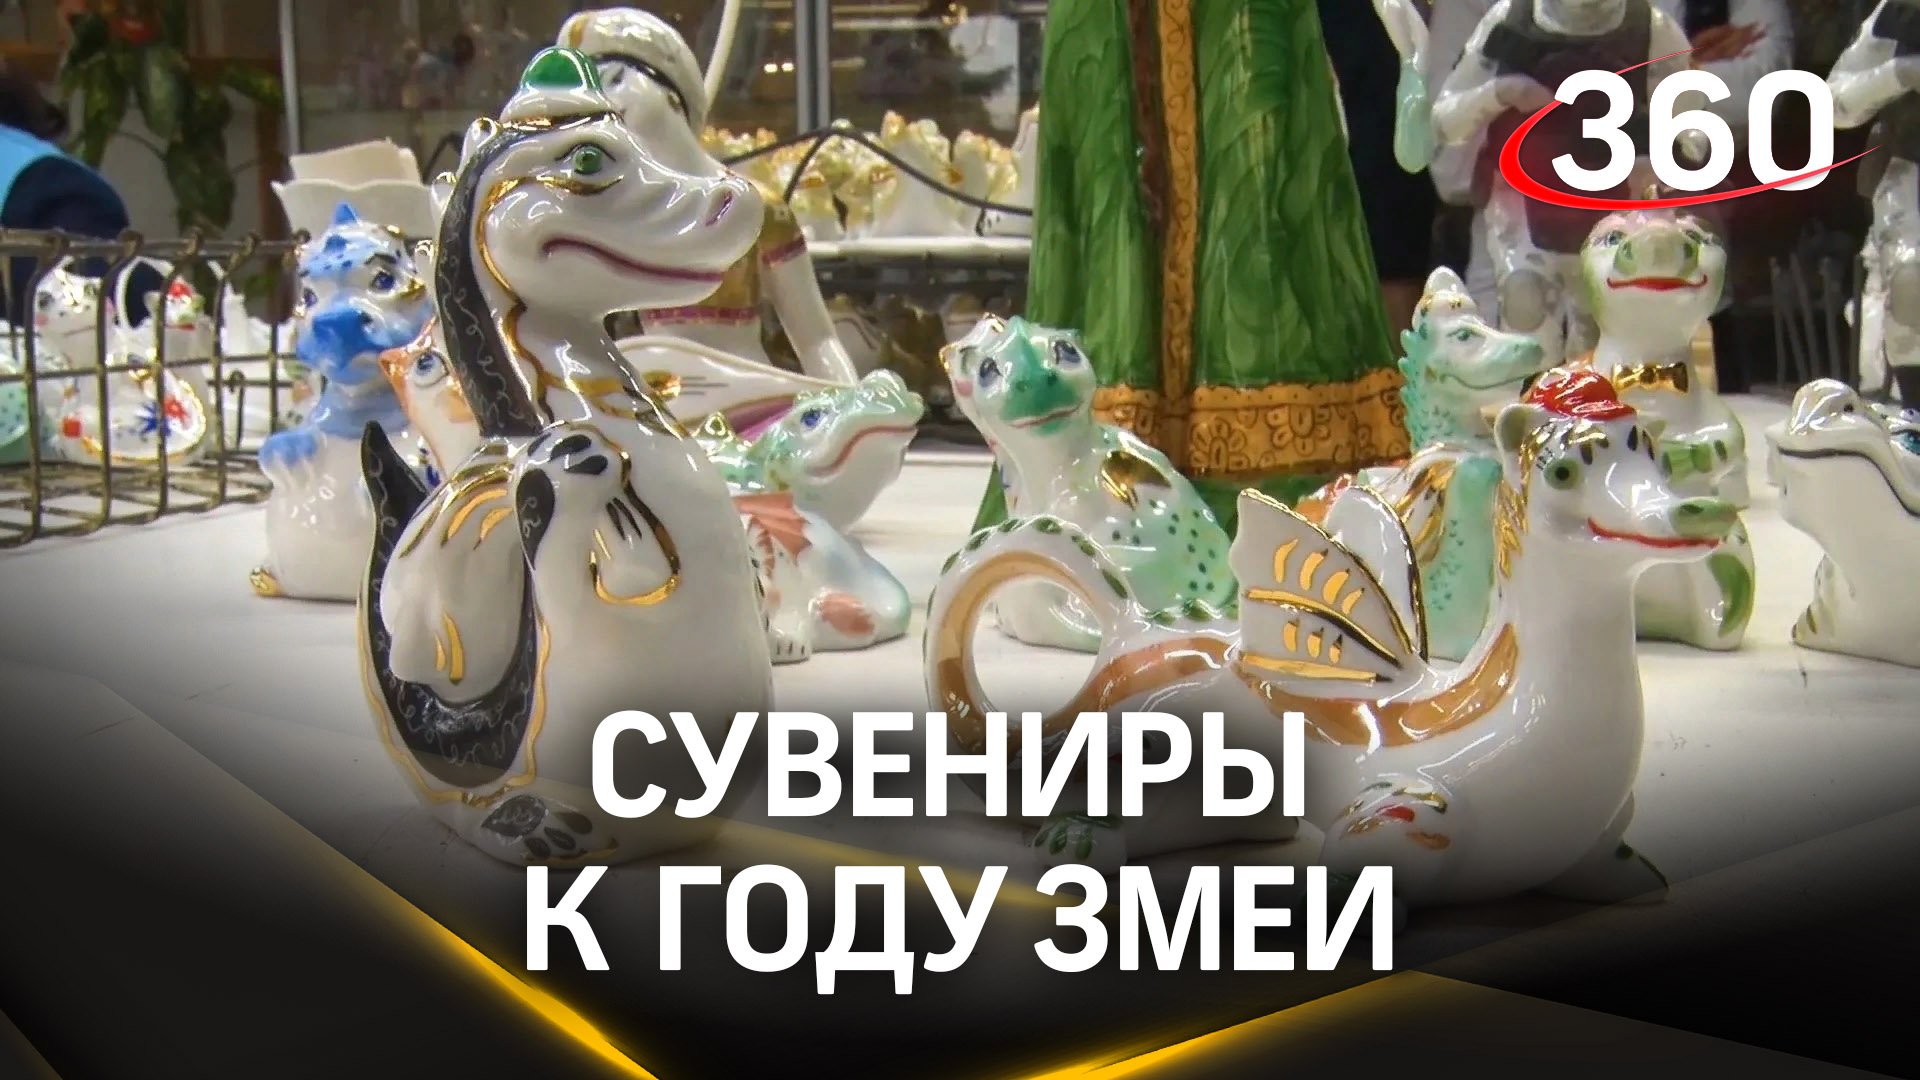 Фарфористы из Ликино-Дулево готовят сувениры к году змеи